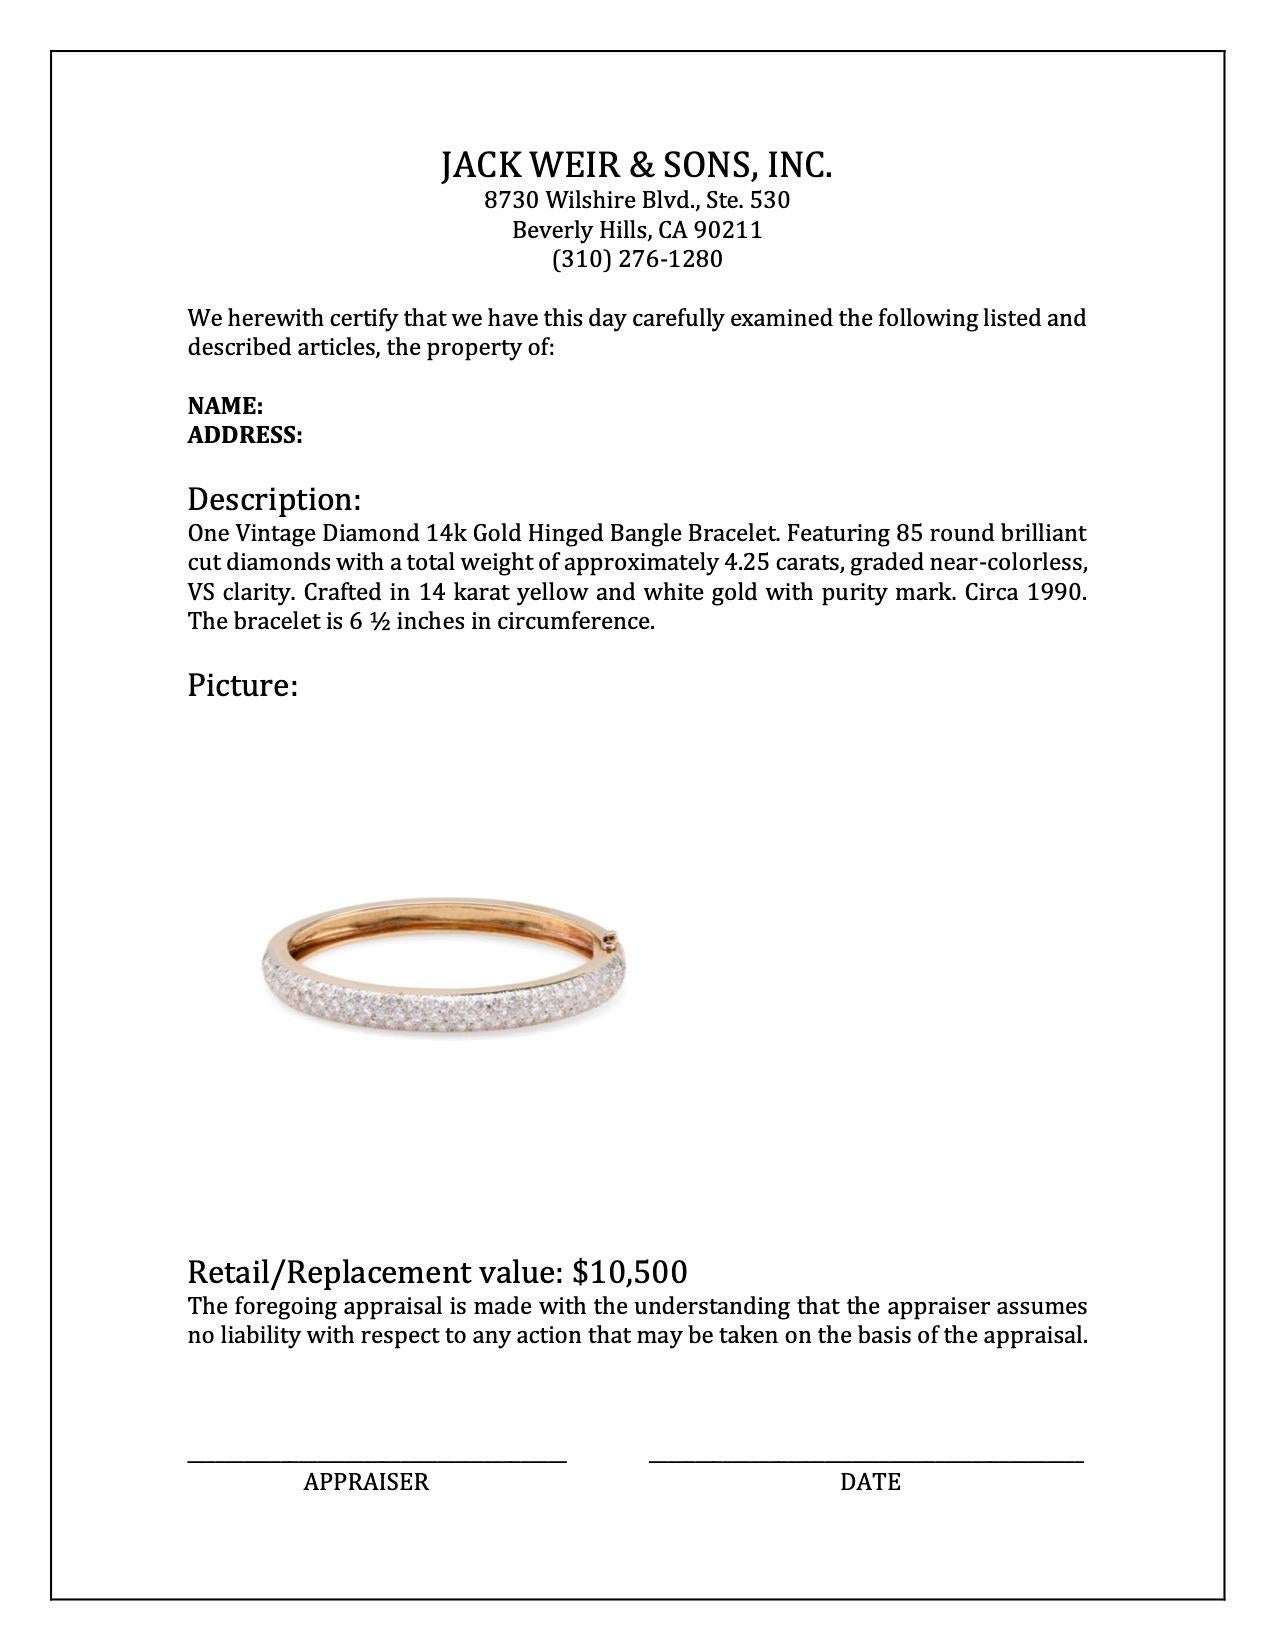 Women's or Men's Vintage Diamond 14k Gold Hinged Bangle Bracelet